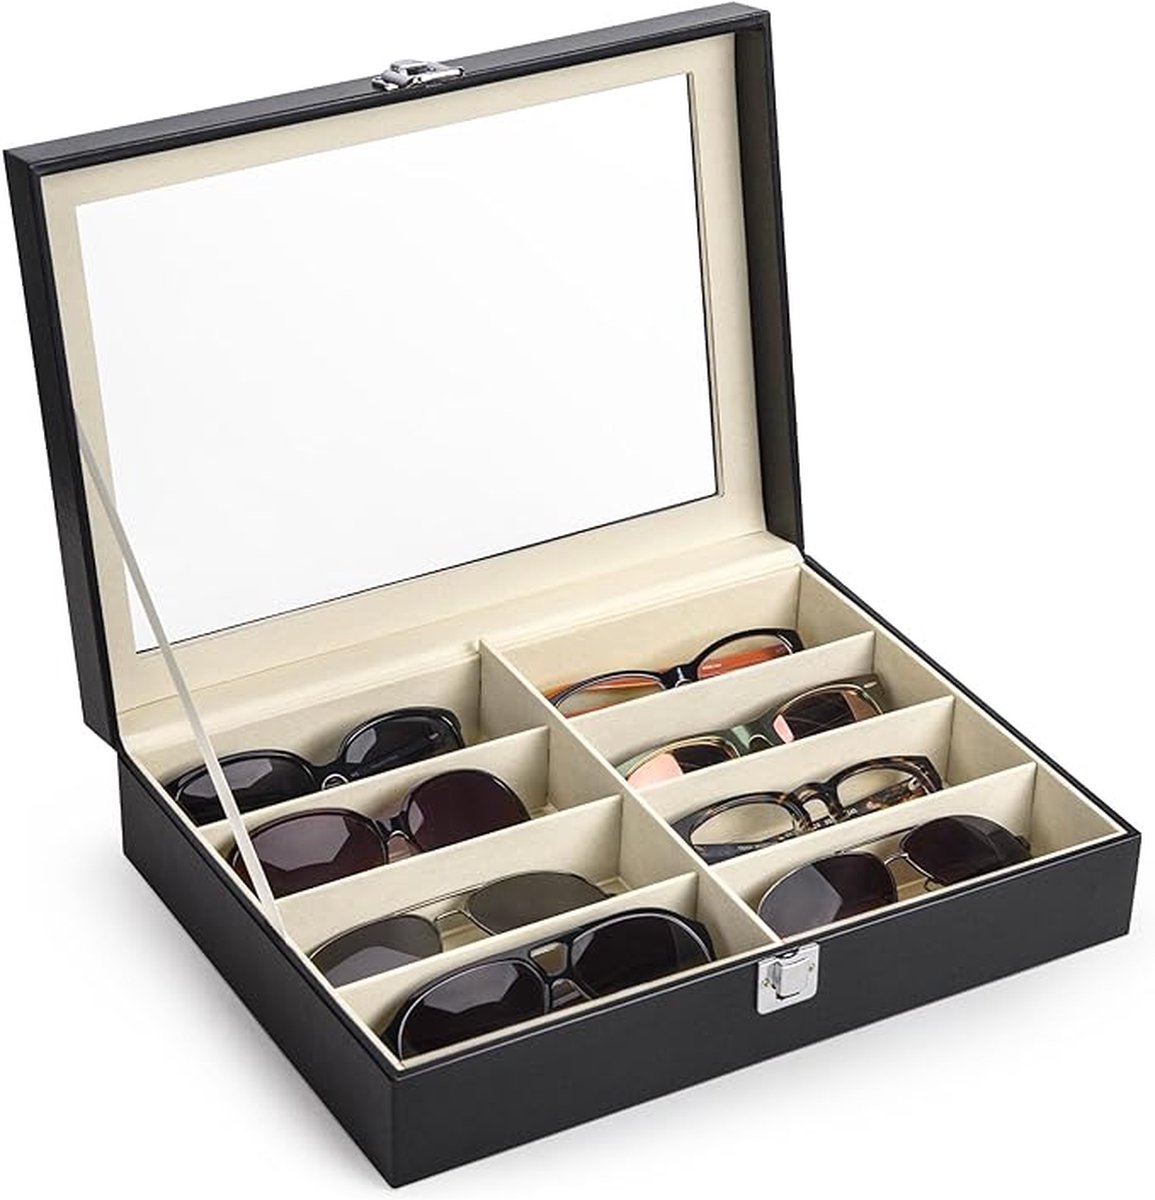 iBright Zonnebrillen opbergdoos voor 8 brillen - Opberg box voor Brillen - Fluweel - Brillen doos -Kunstleer - Zwart - iBright